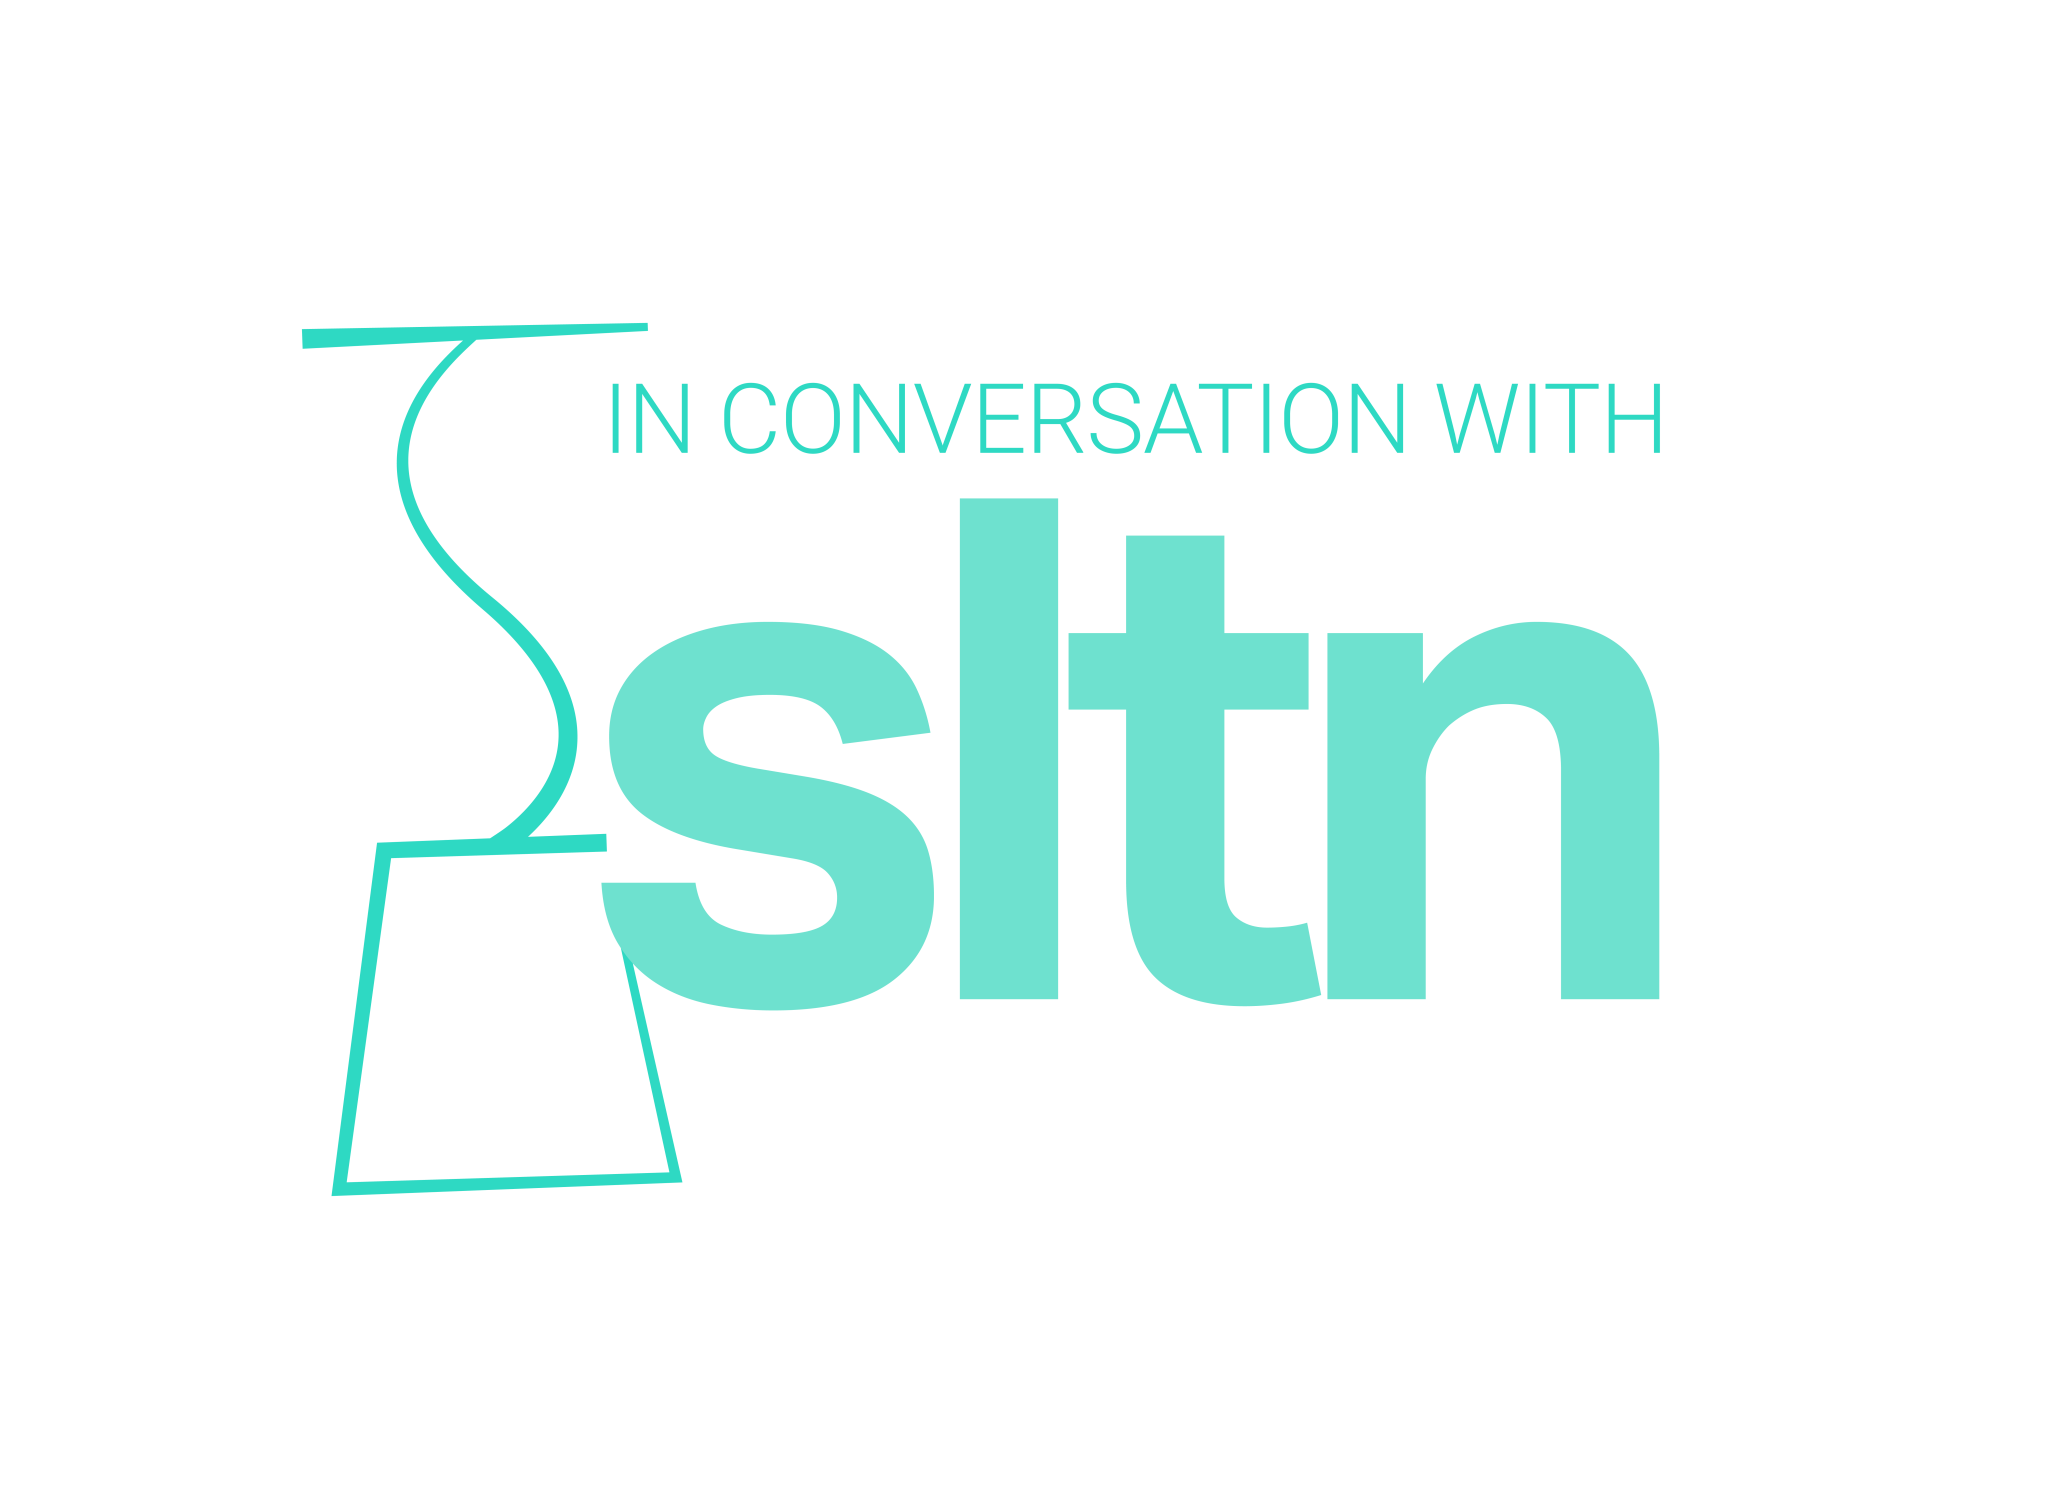 SLTN_in_conversation_with_logo